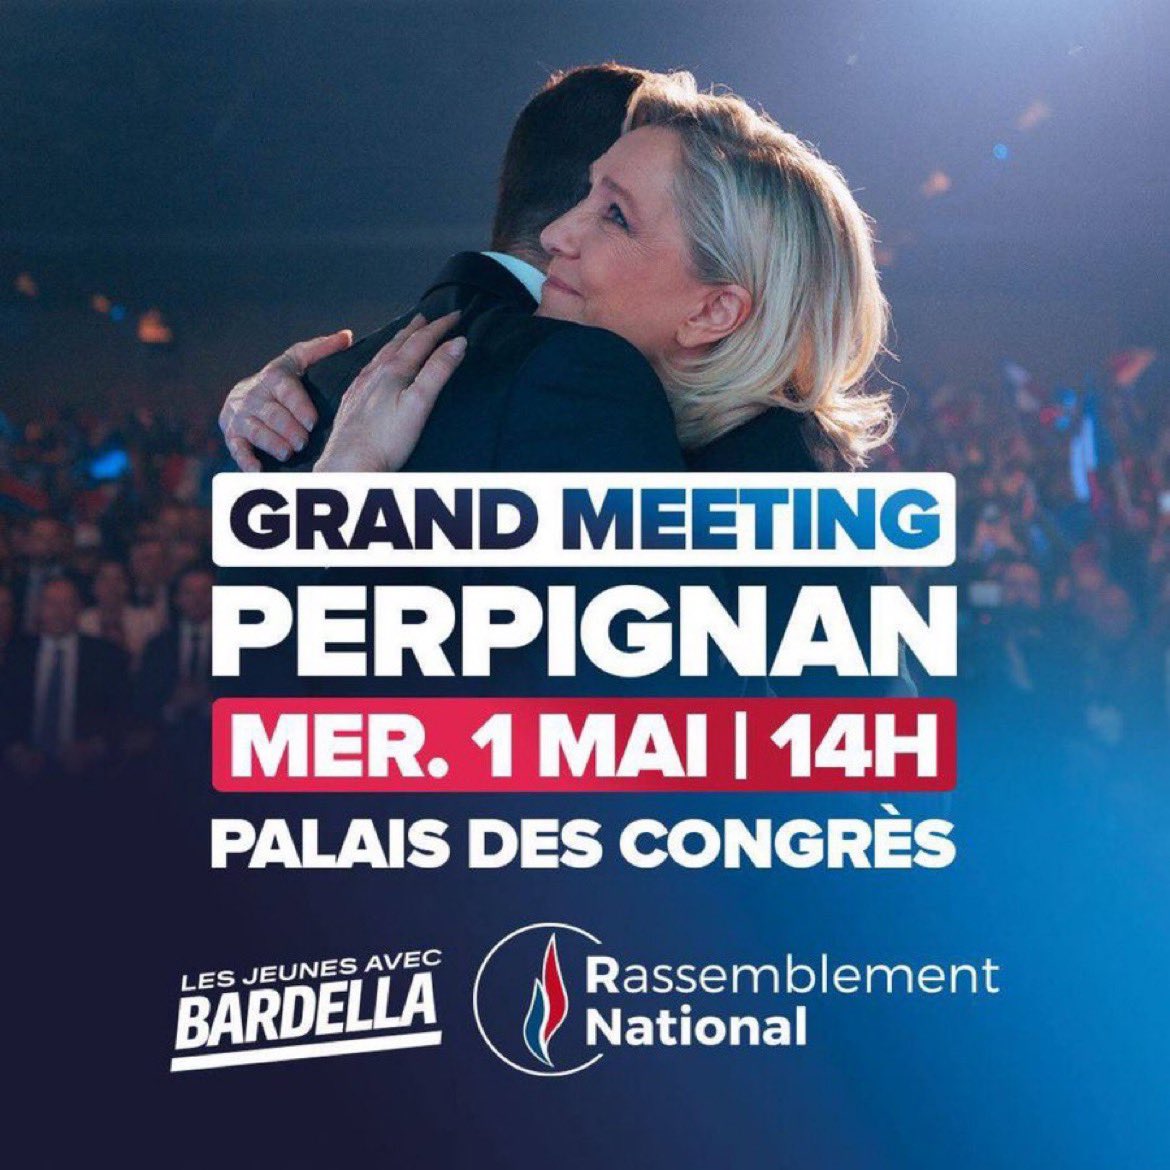 🔵 J-6 avant le grand meeting de @J_Bardella et @MLP_officiel à Perpignan ! Nous vous donnons rendez-vous le 1er Mai à 14H au Palais des Congrès de Perpignan 🇫🇷 Inscriptions ➡️ urlz.fr/qhQz #TousAPerpignan #VivementLe9Juin #Europeennes2024